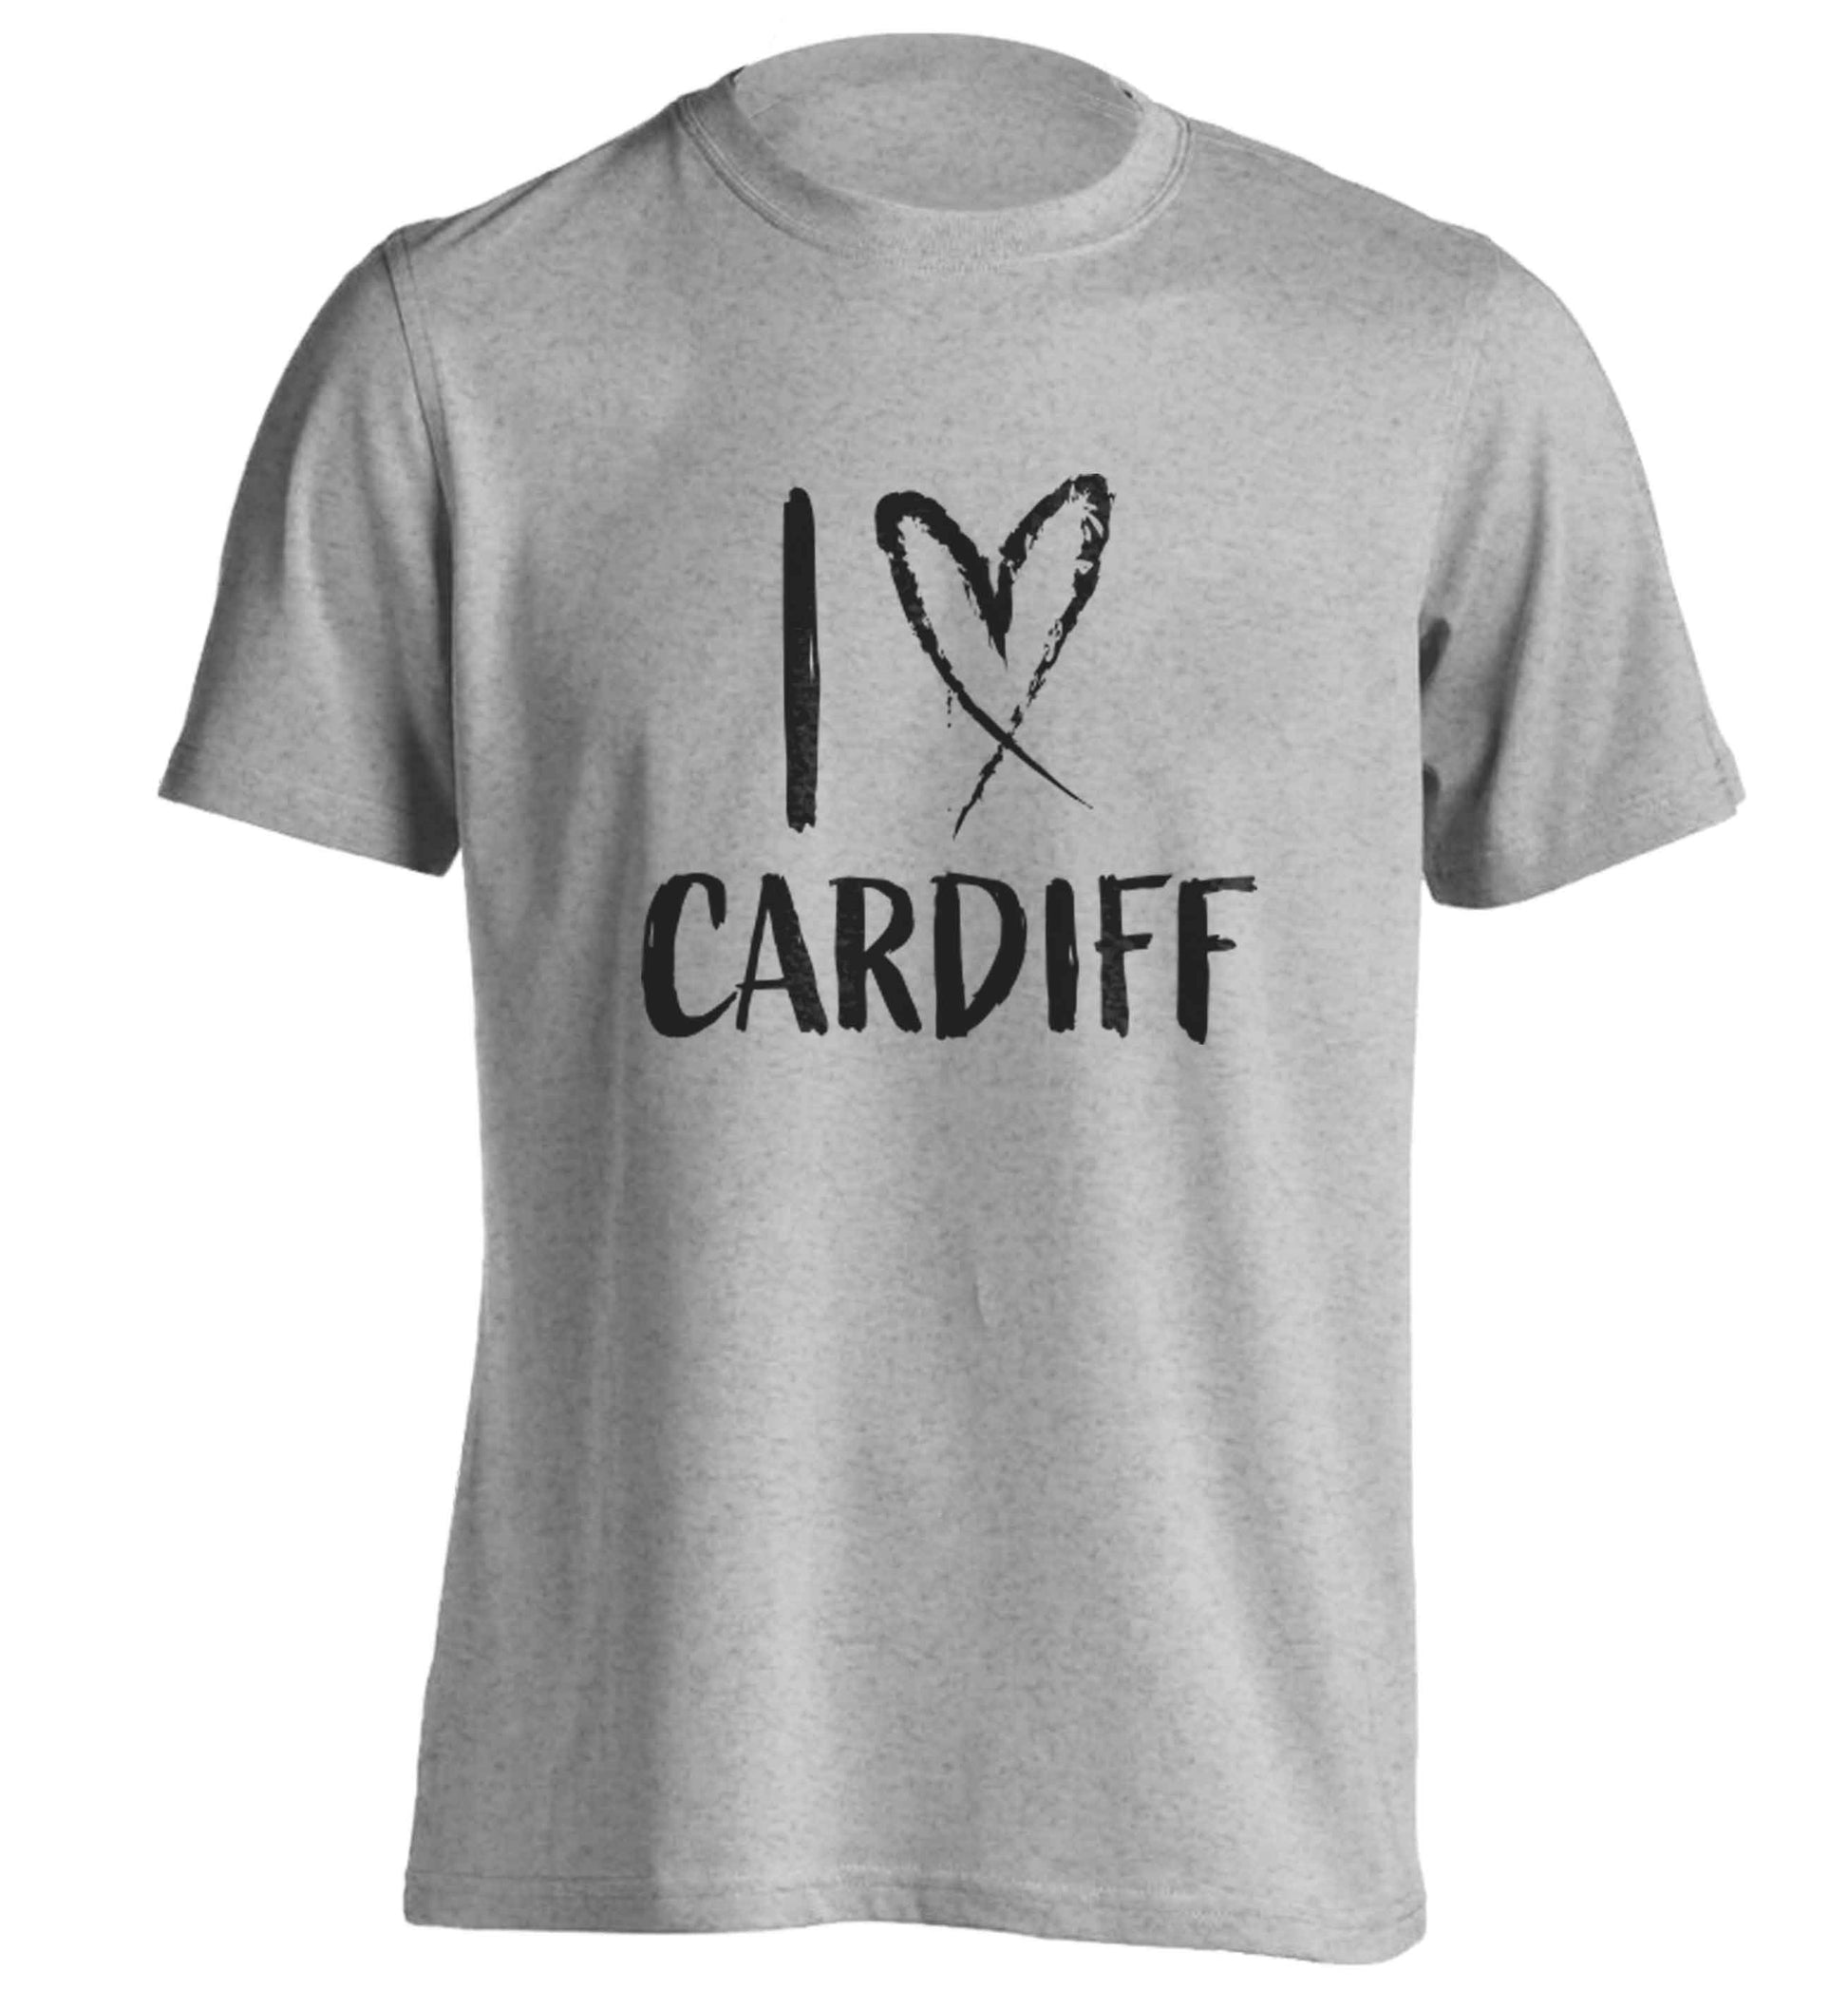 I love Cardiff adults unisex grey Tshirt 2XL